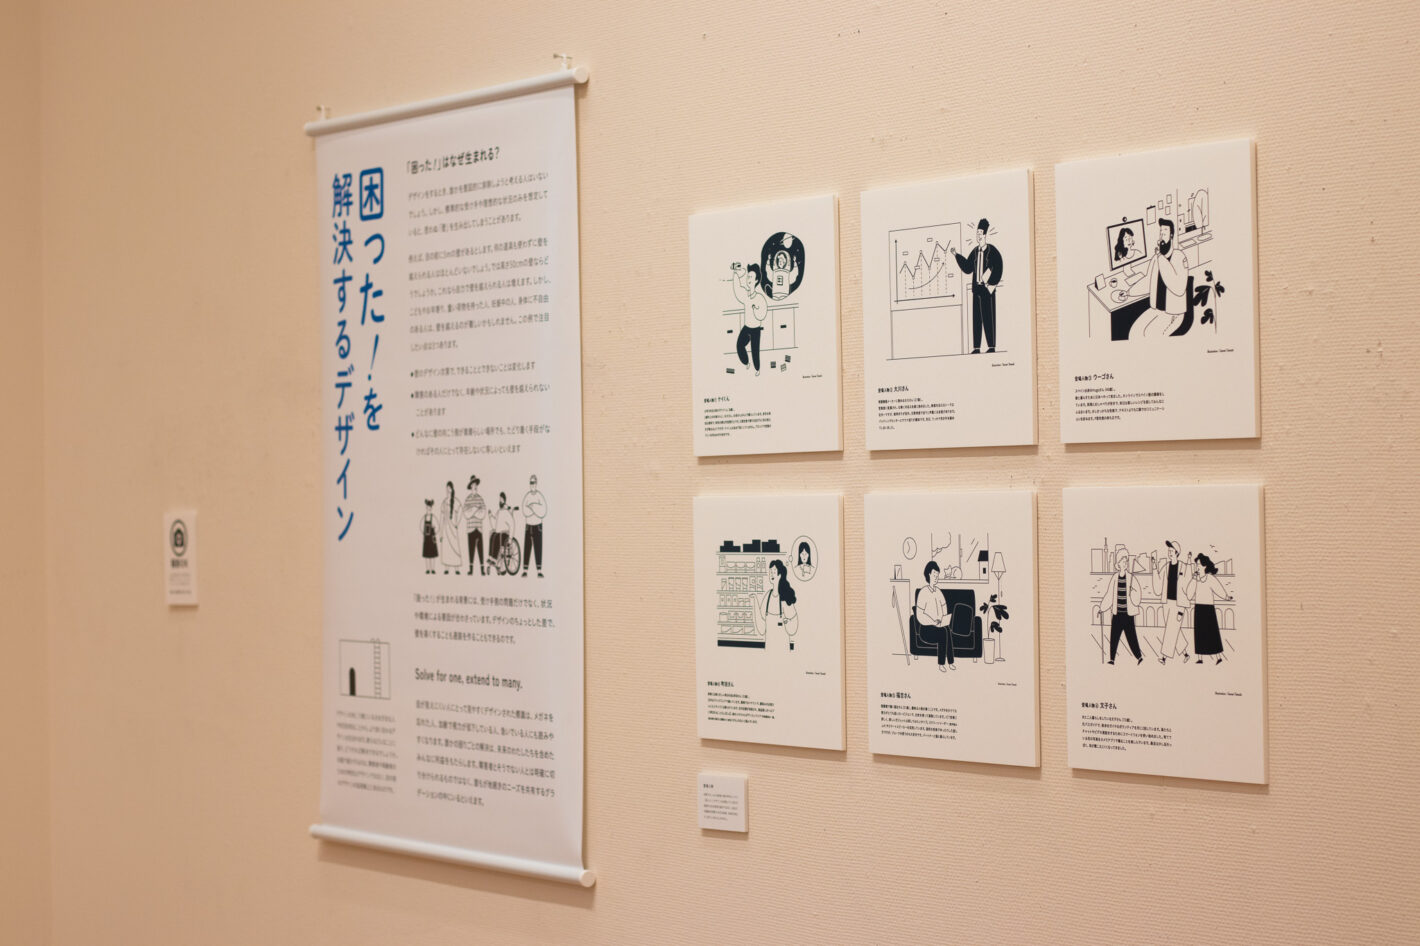 写真：「困った！を解決するデザイン」というタペストリーと、6人の登場人物のイラストとプロフィールが書かれたパネルの展示。